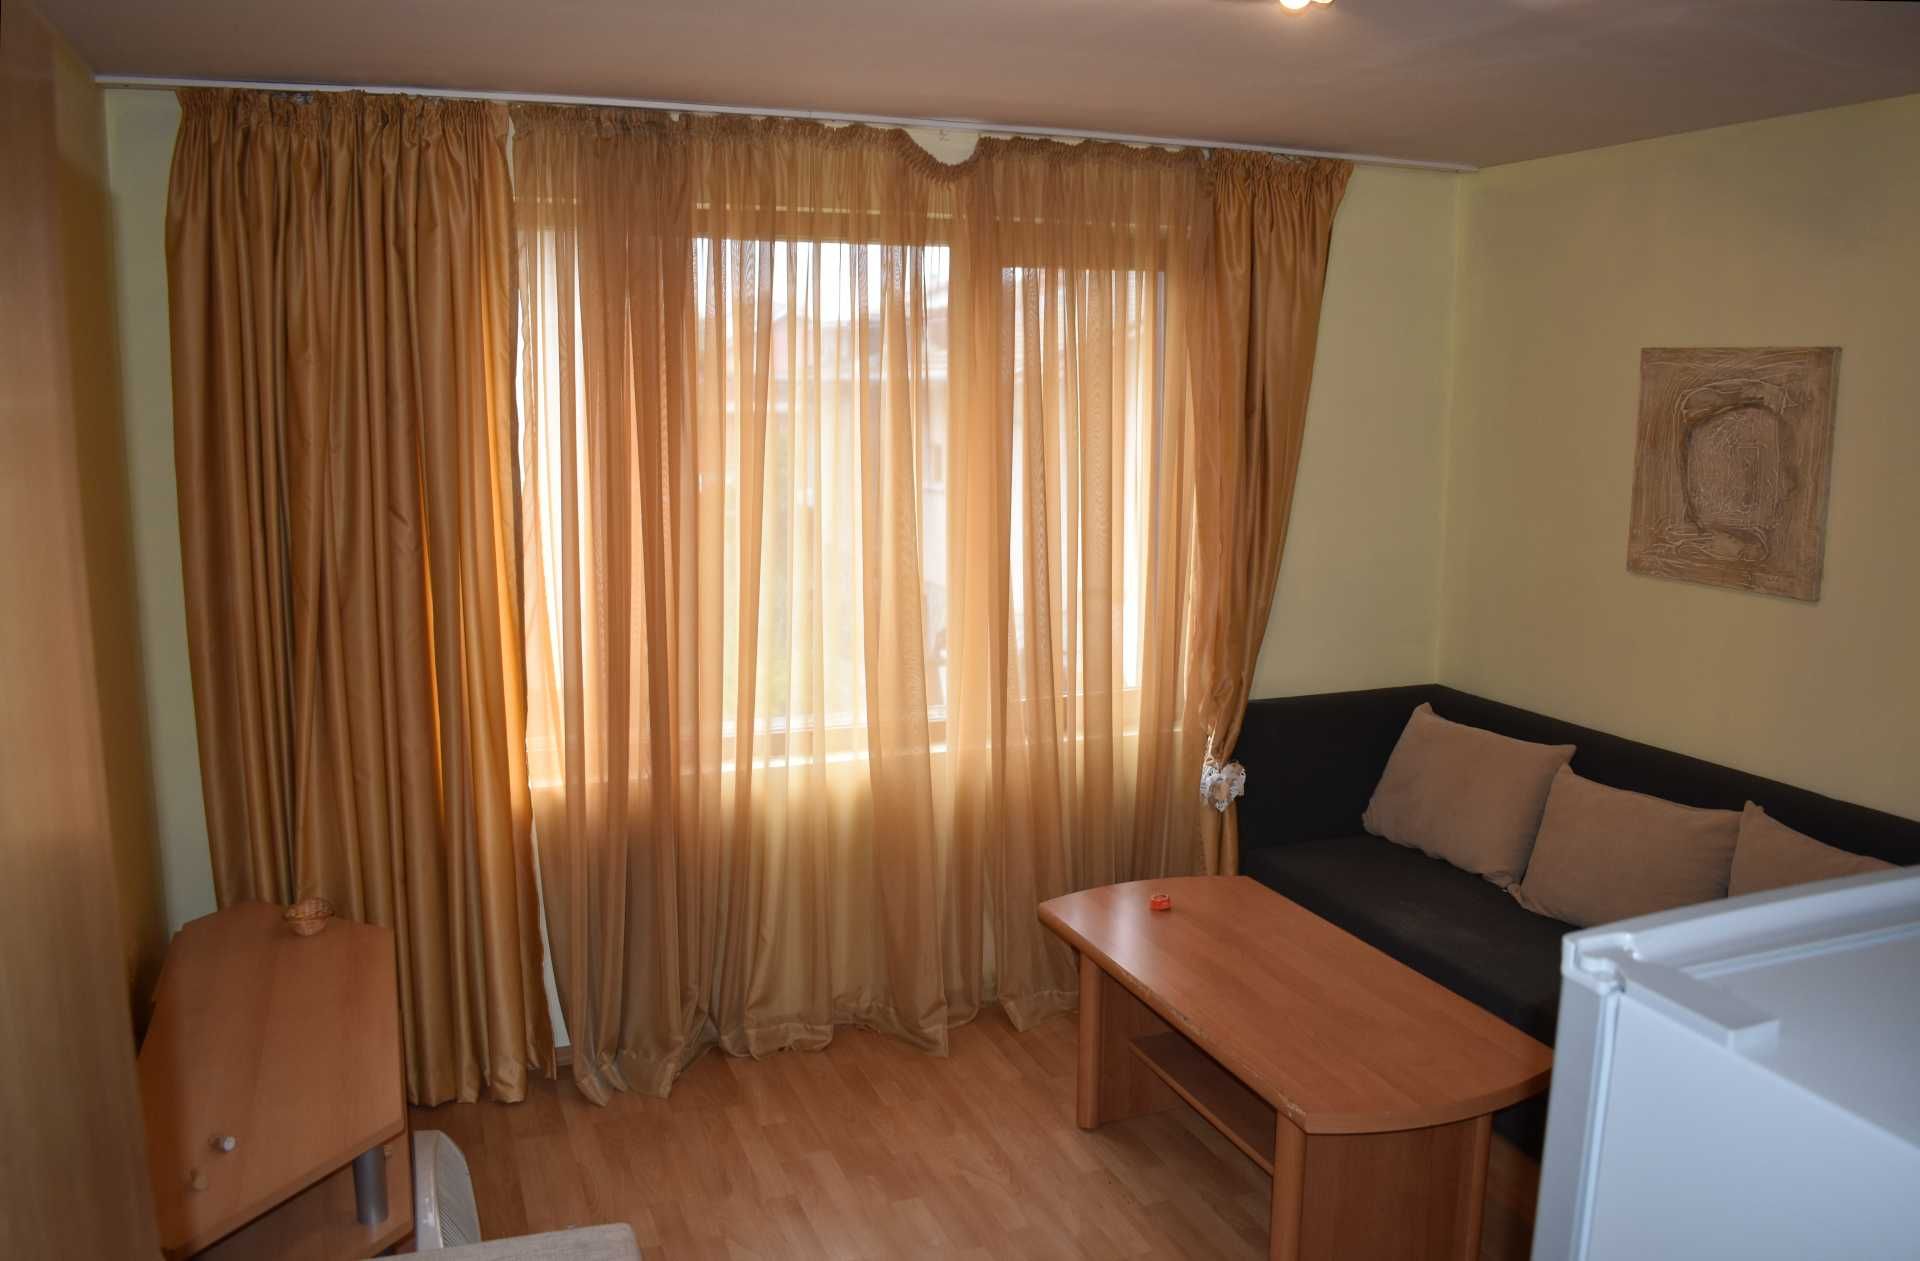 Двустаен апартамент в сграда без поддръжка в Банско